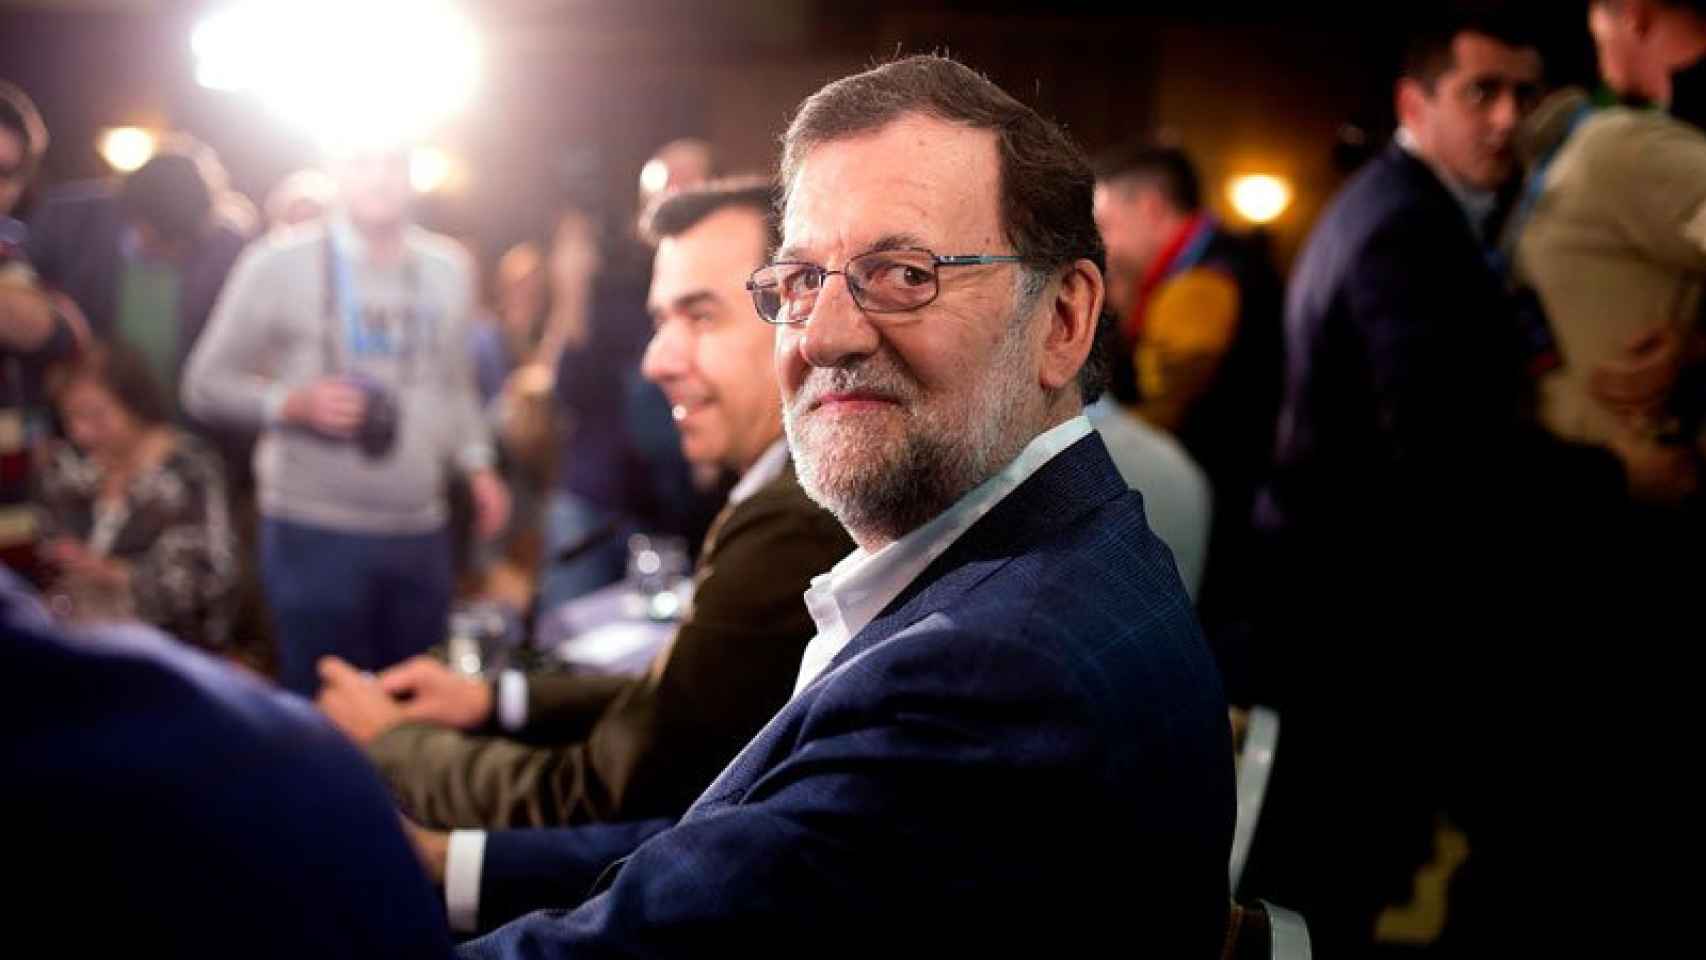 El presidente del Gobierno en funciones Mariano Rajoy, el sábado en Córdoba.